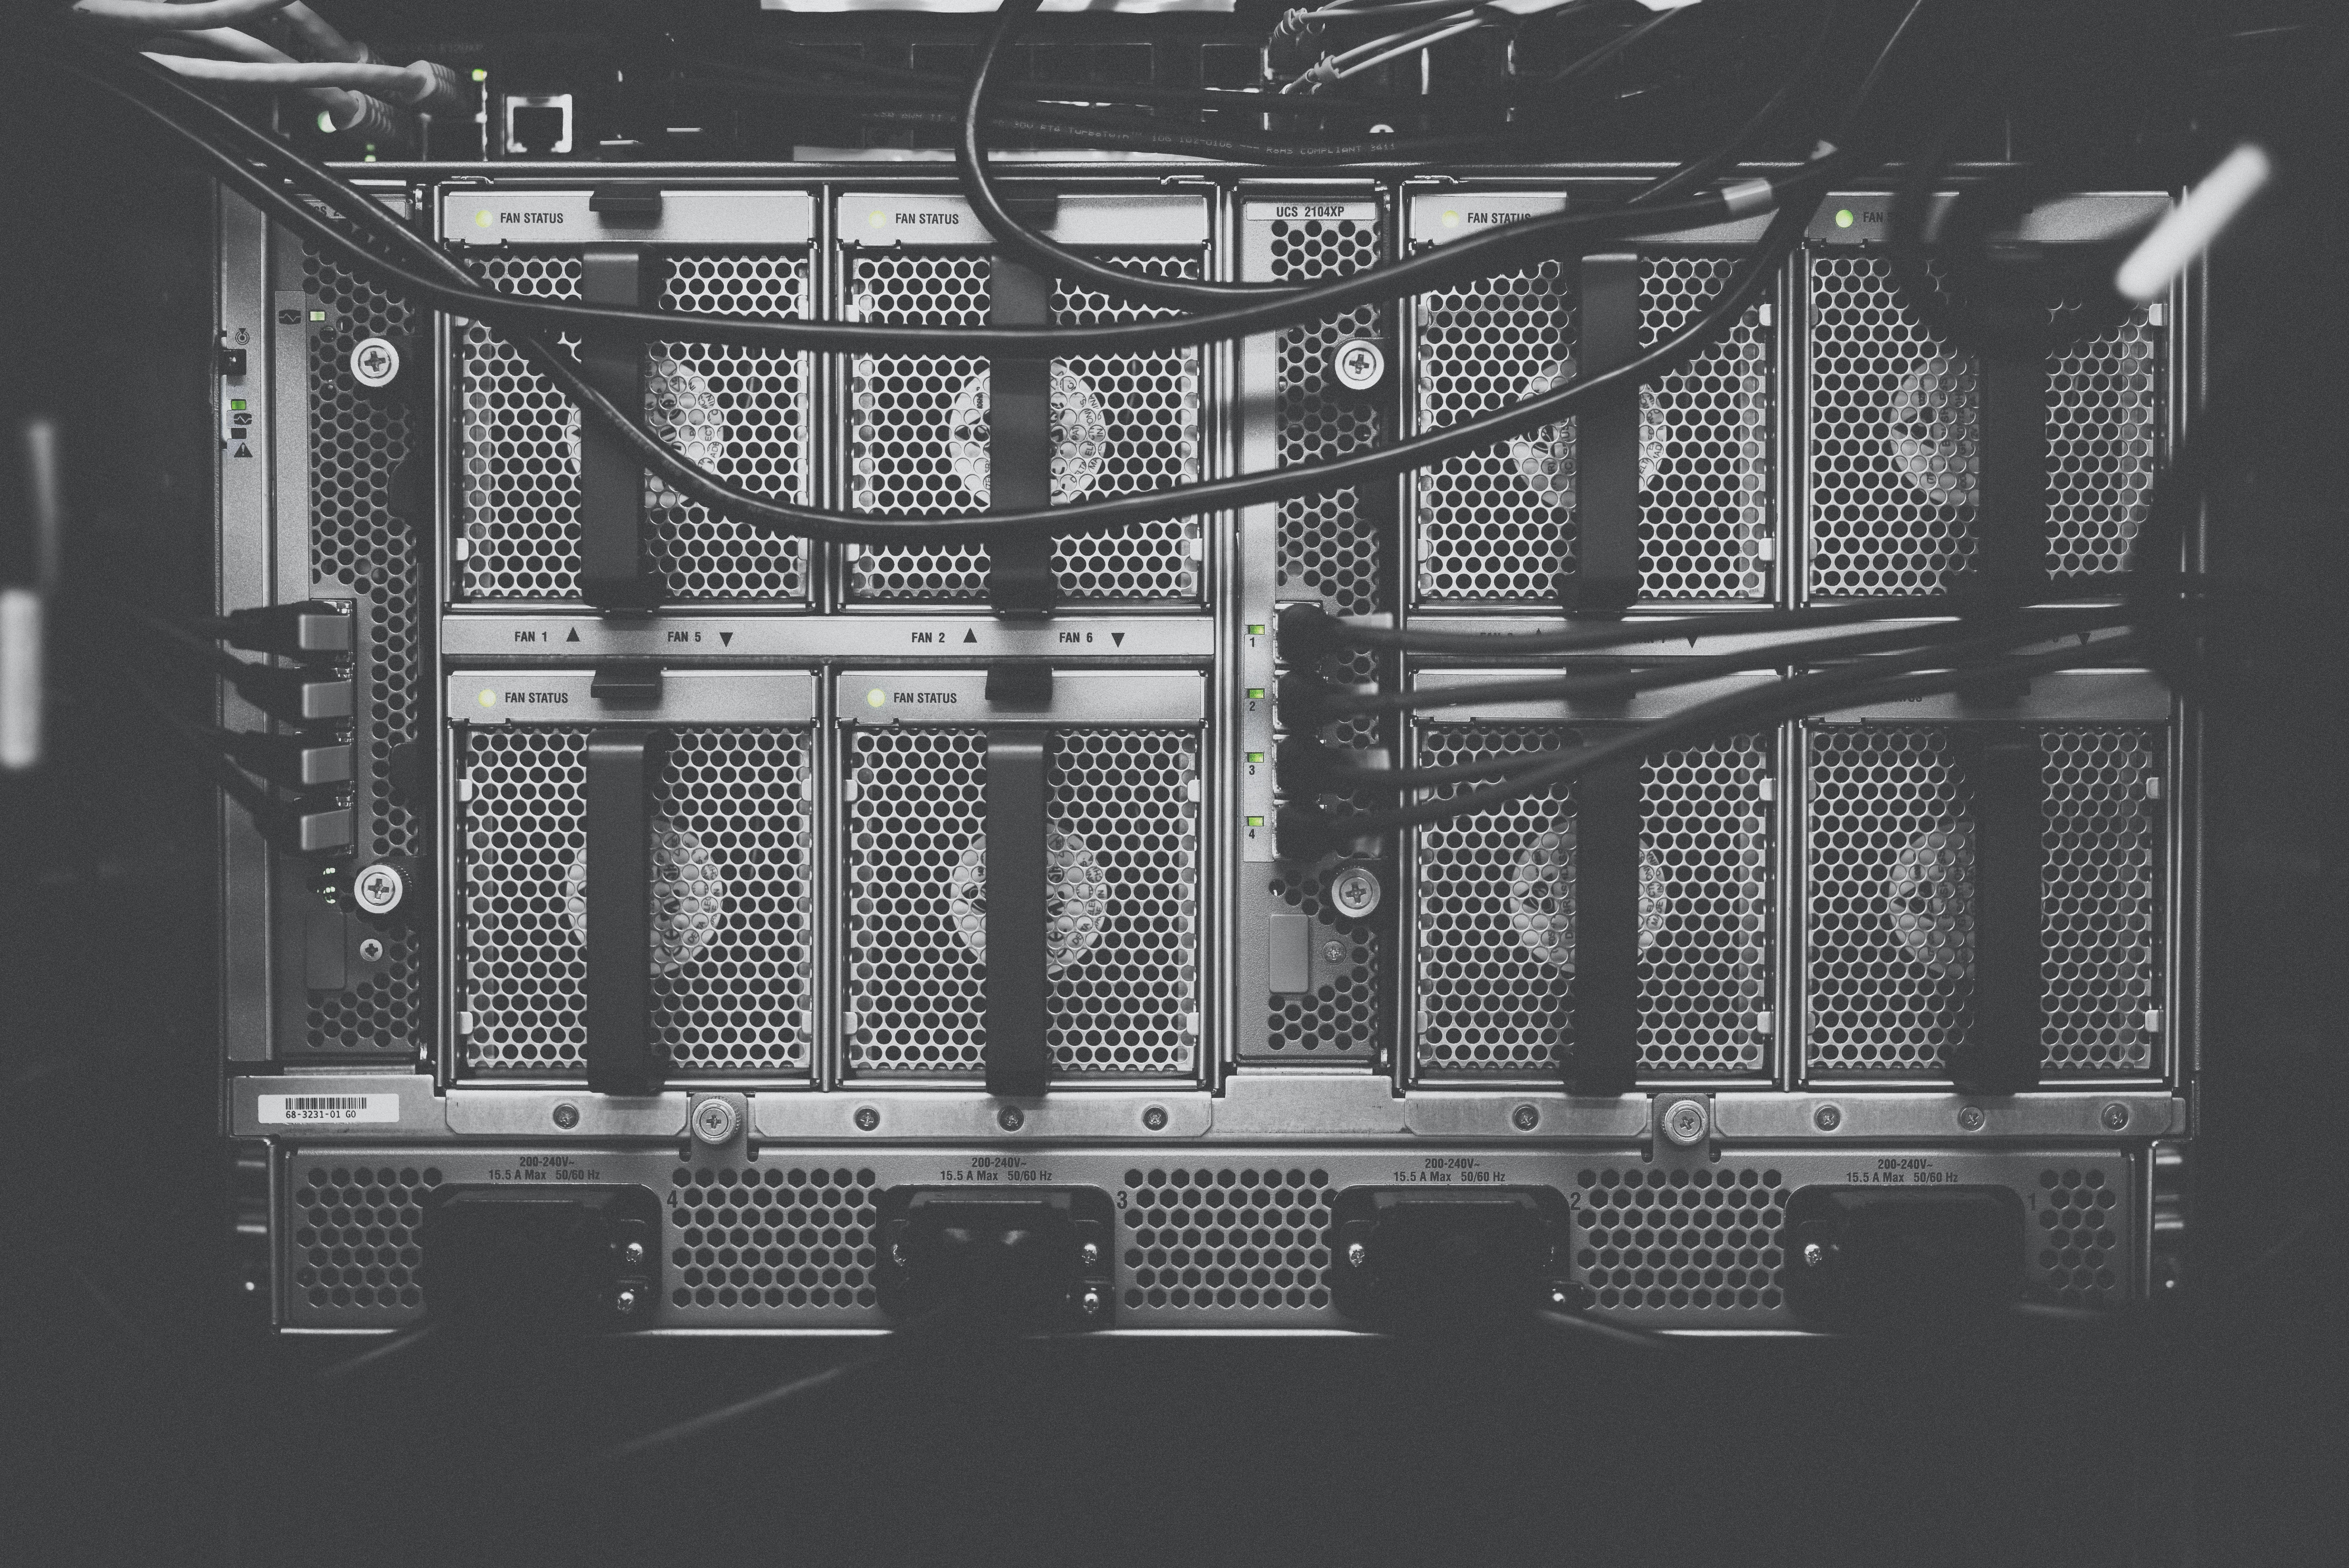 Un server rack in bianco e nero con cavi e indicatori di stato visibili.